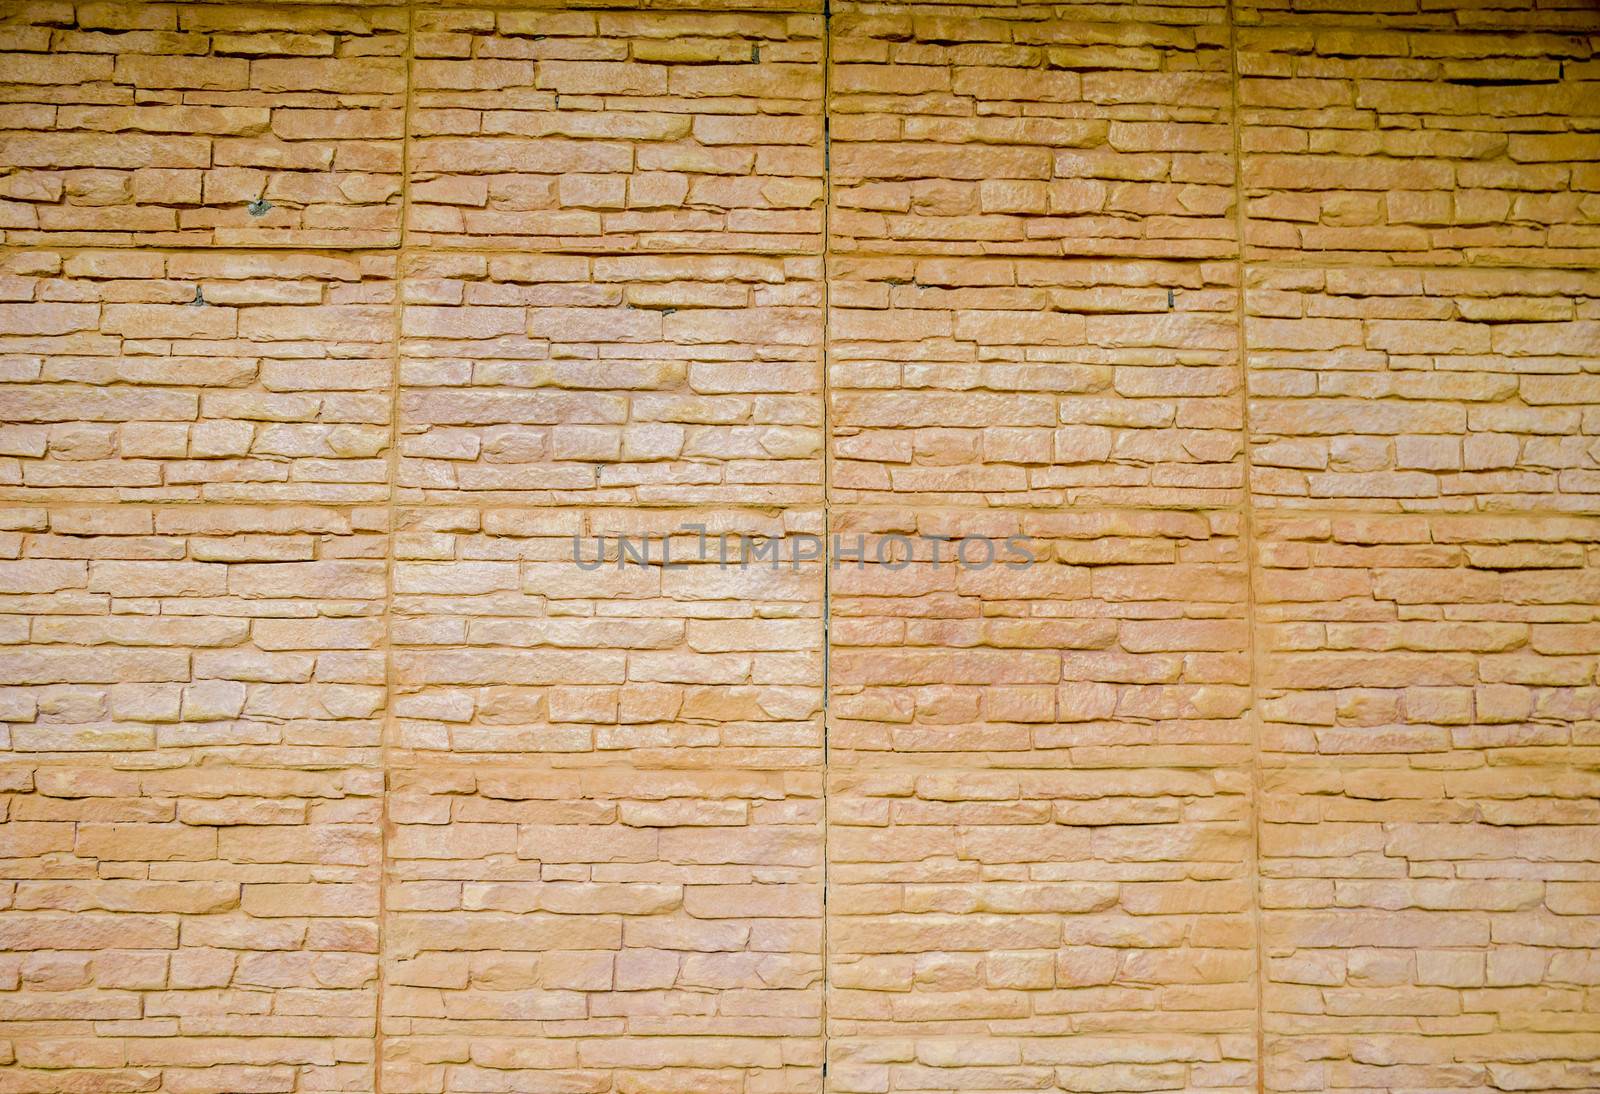 Stone wall pattern by gjeerawut